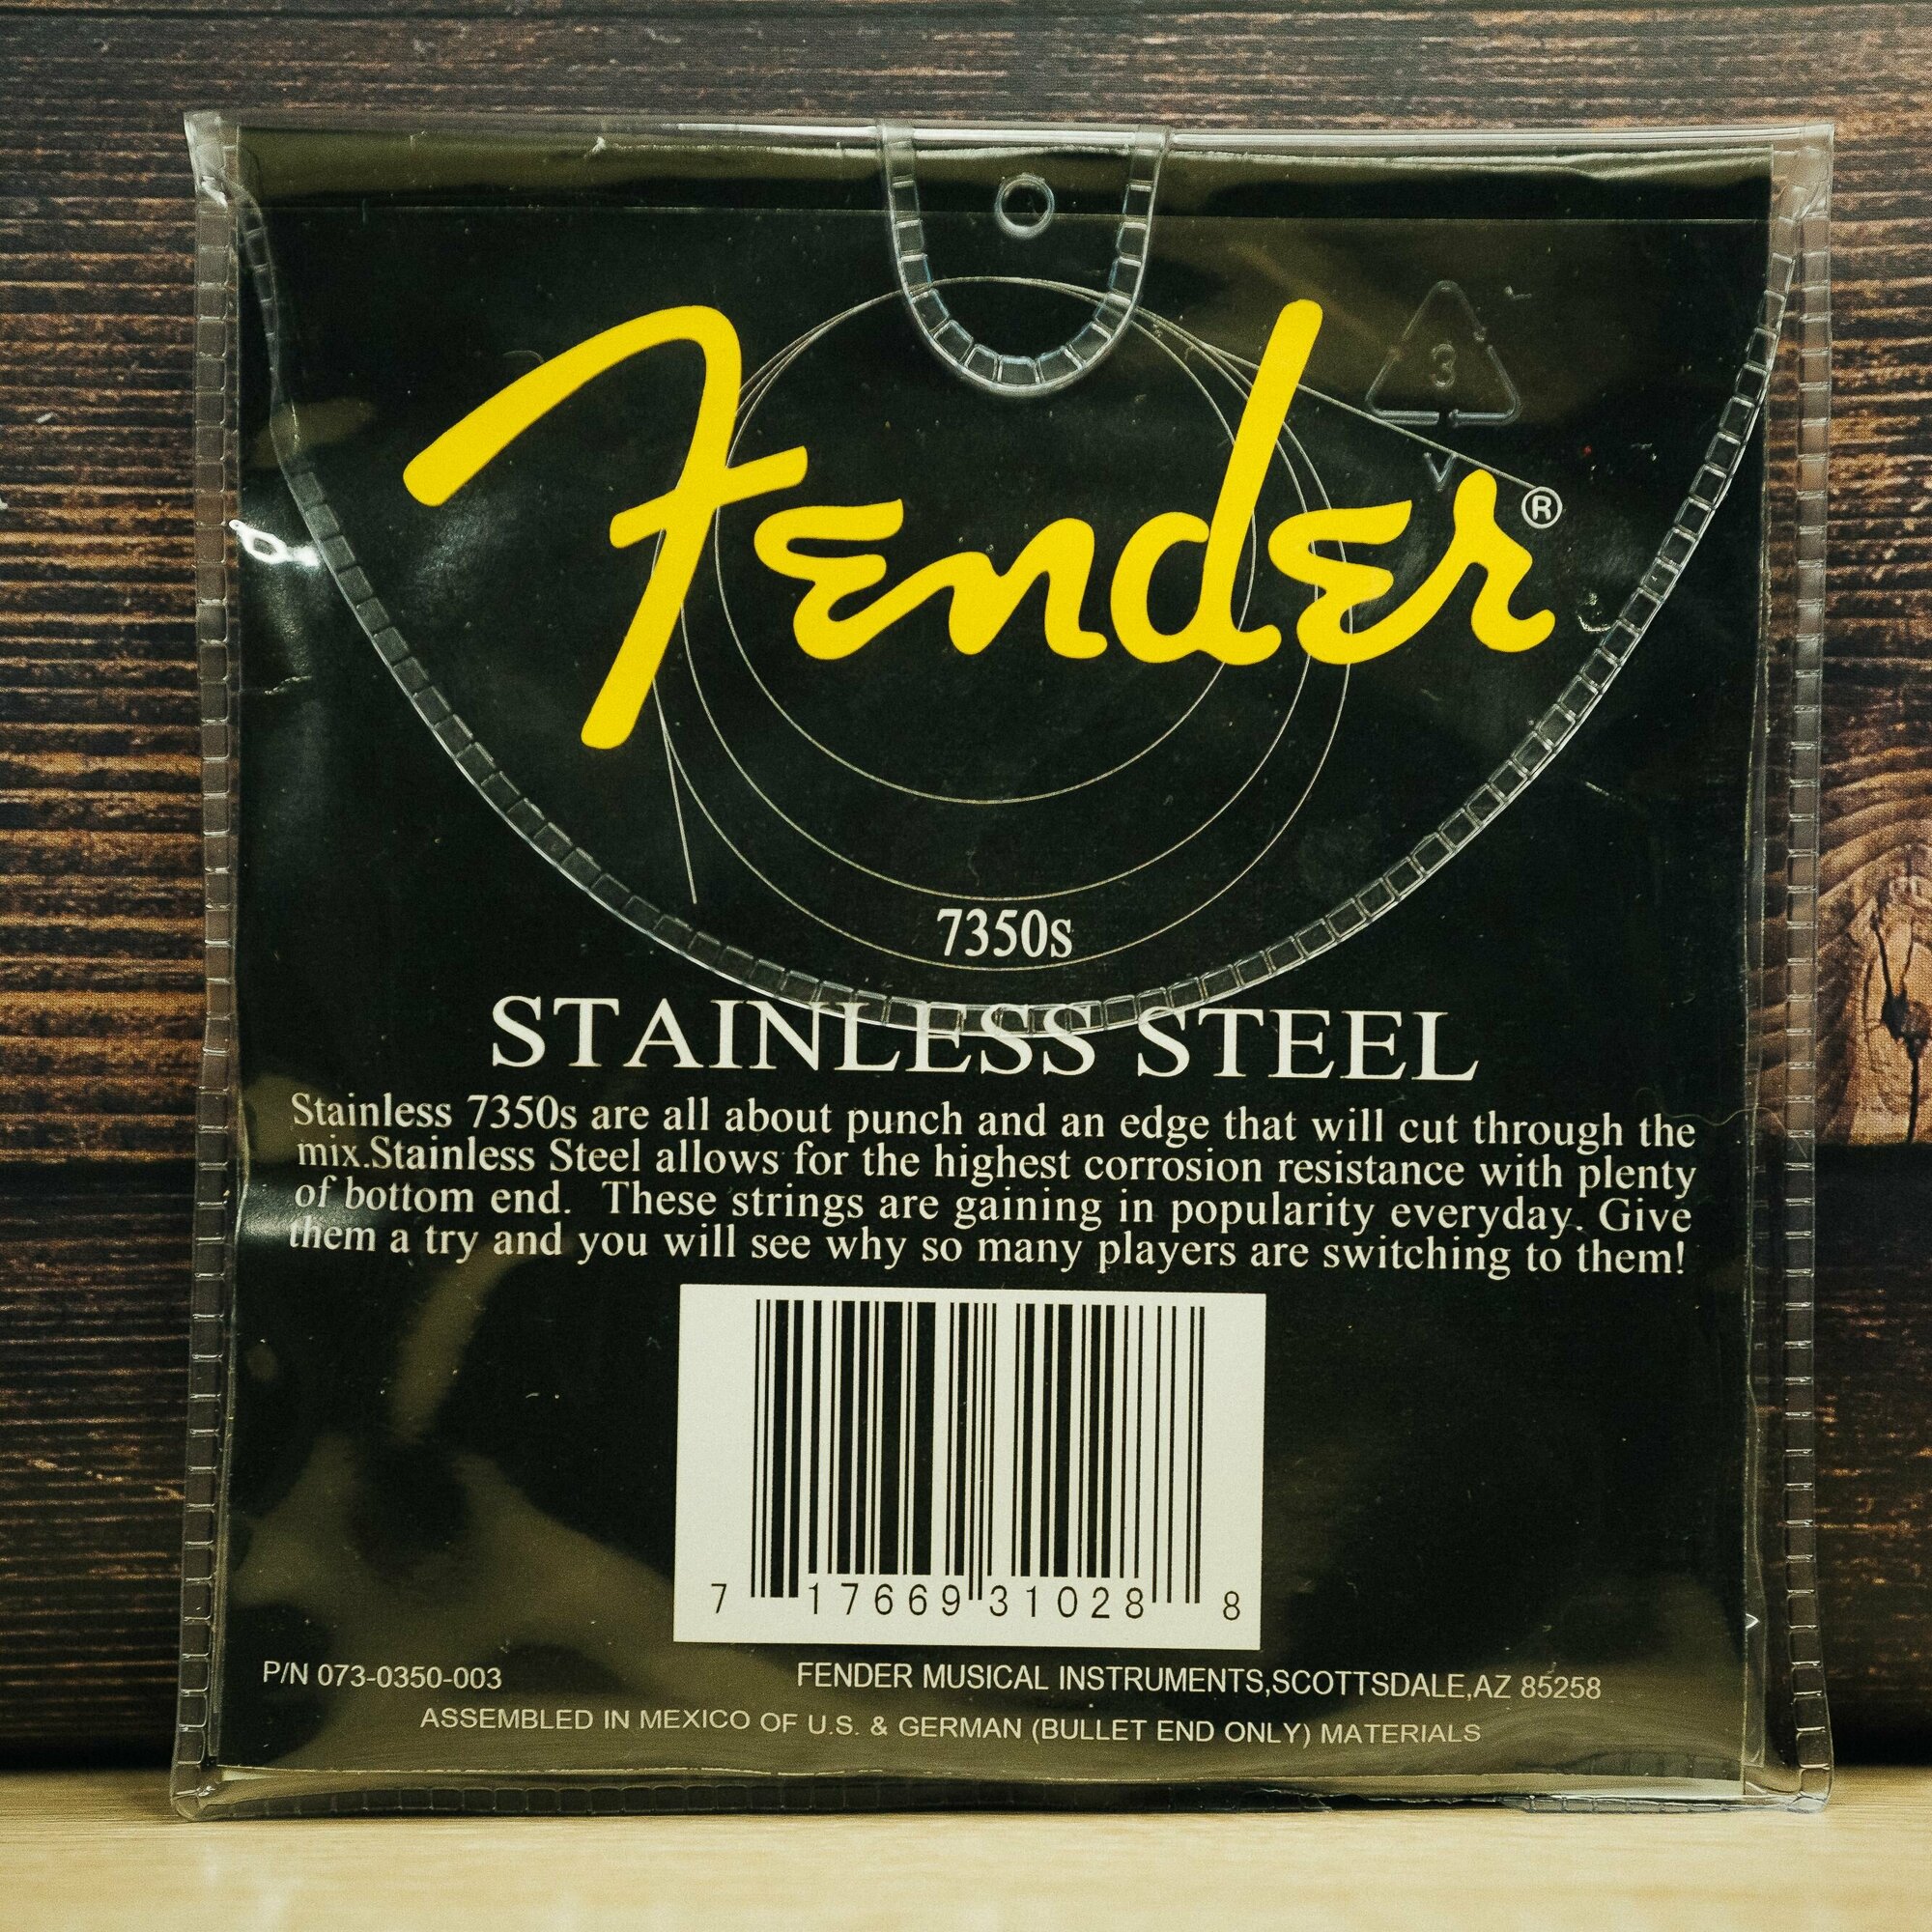 Струны для бас-гитары FENDER STAINLESS BASS 40-95